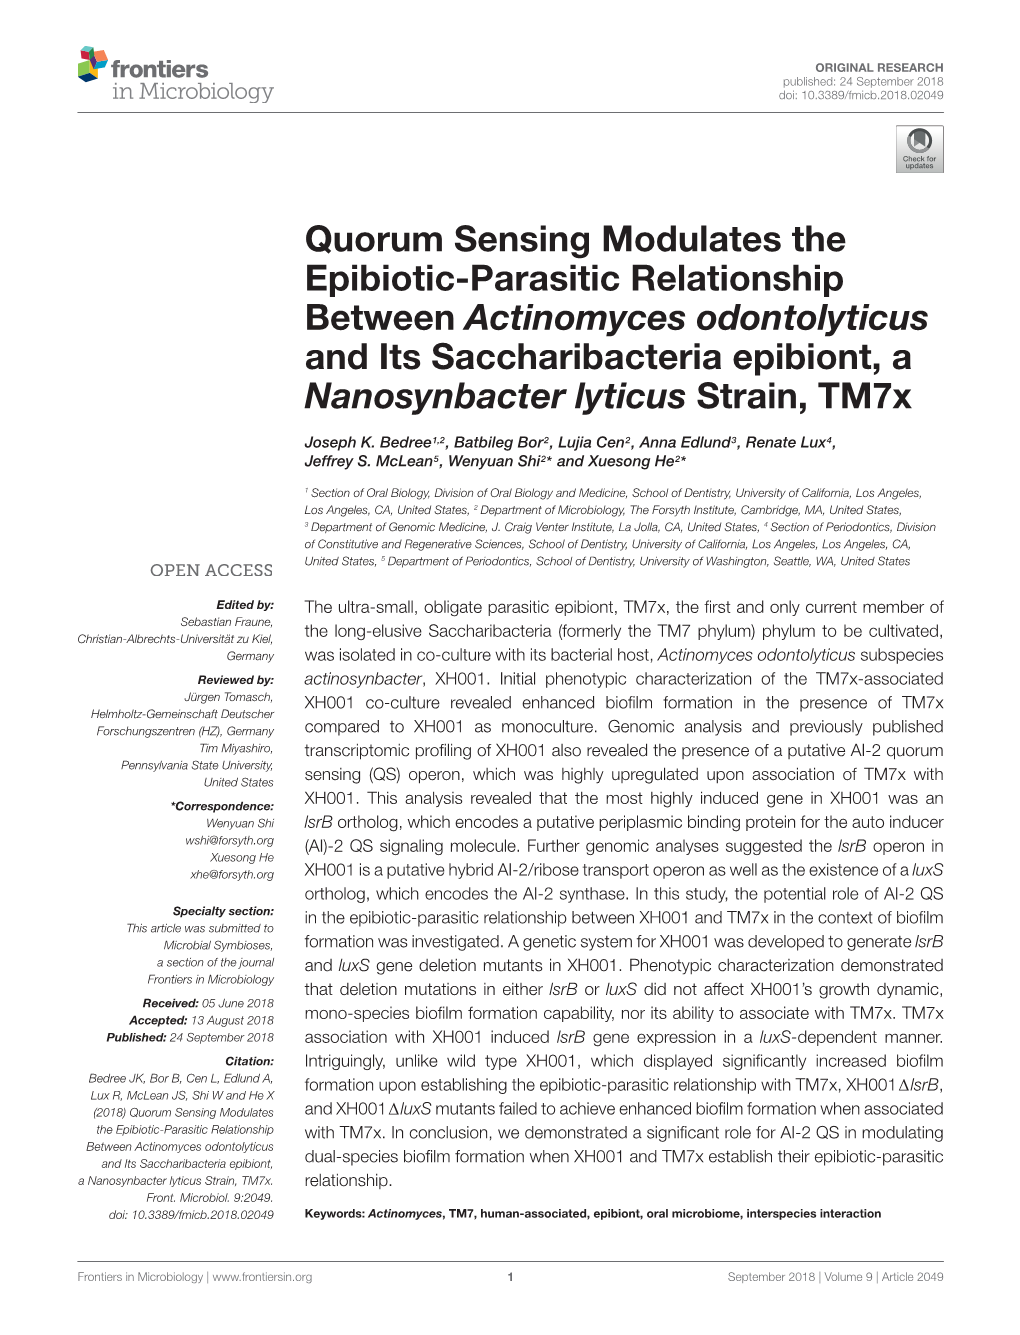 Quorum Sensing Modulates the Epibiotic-Parasitic Relationship